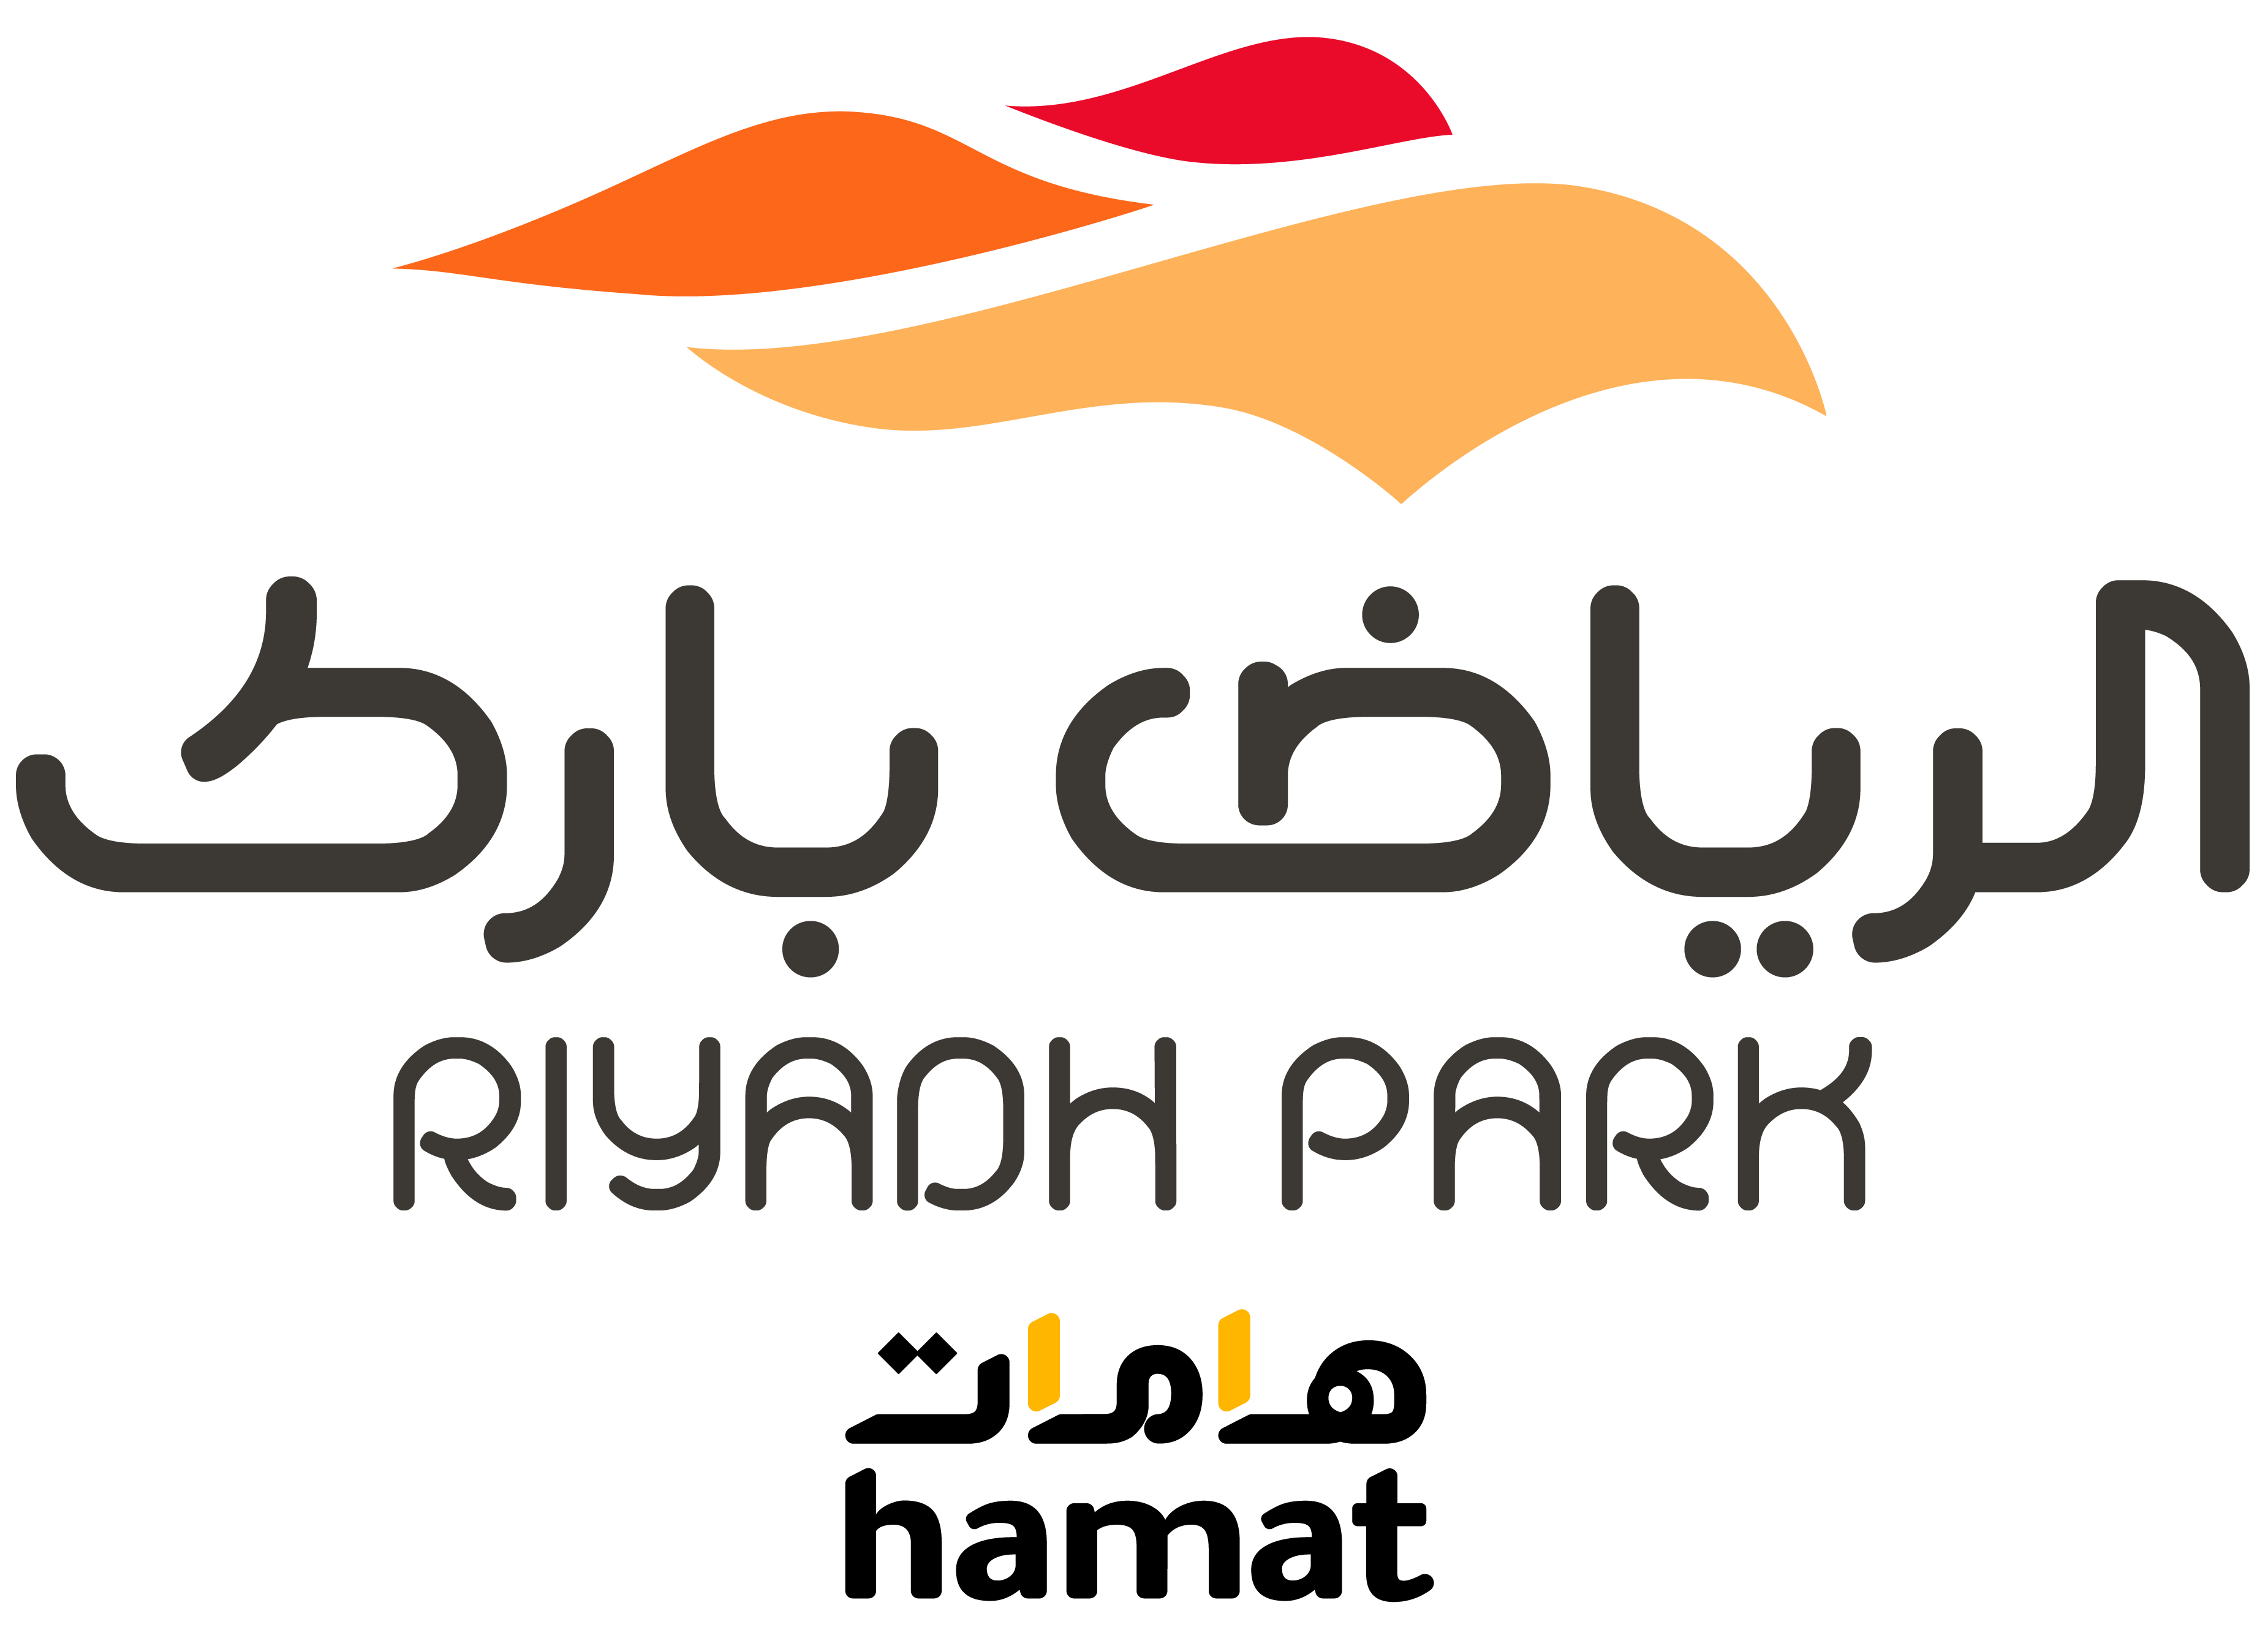 Hollister Riyadh Park